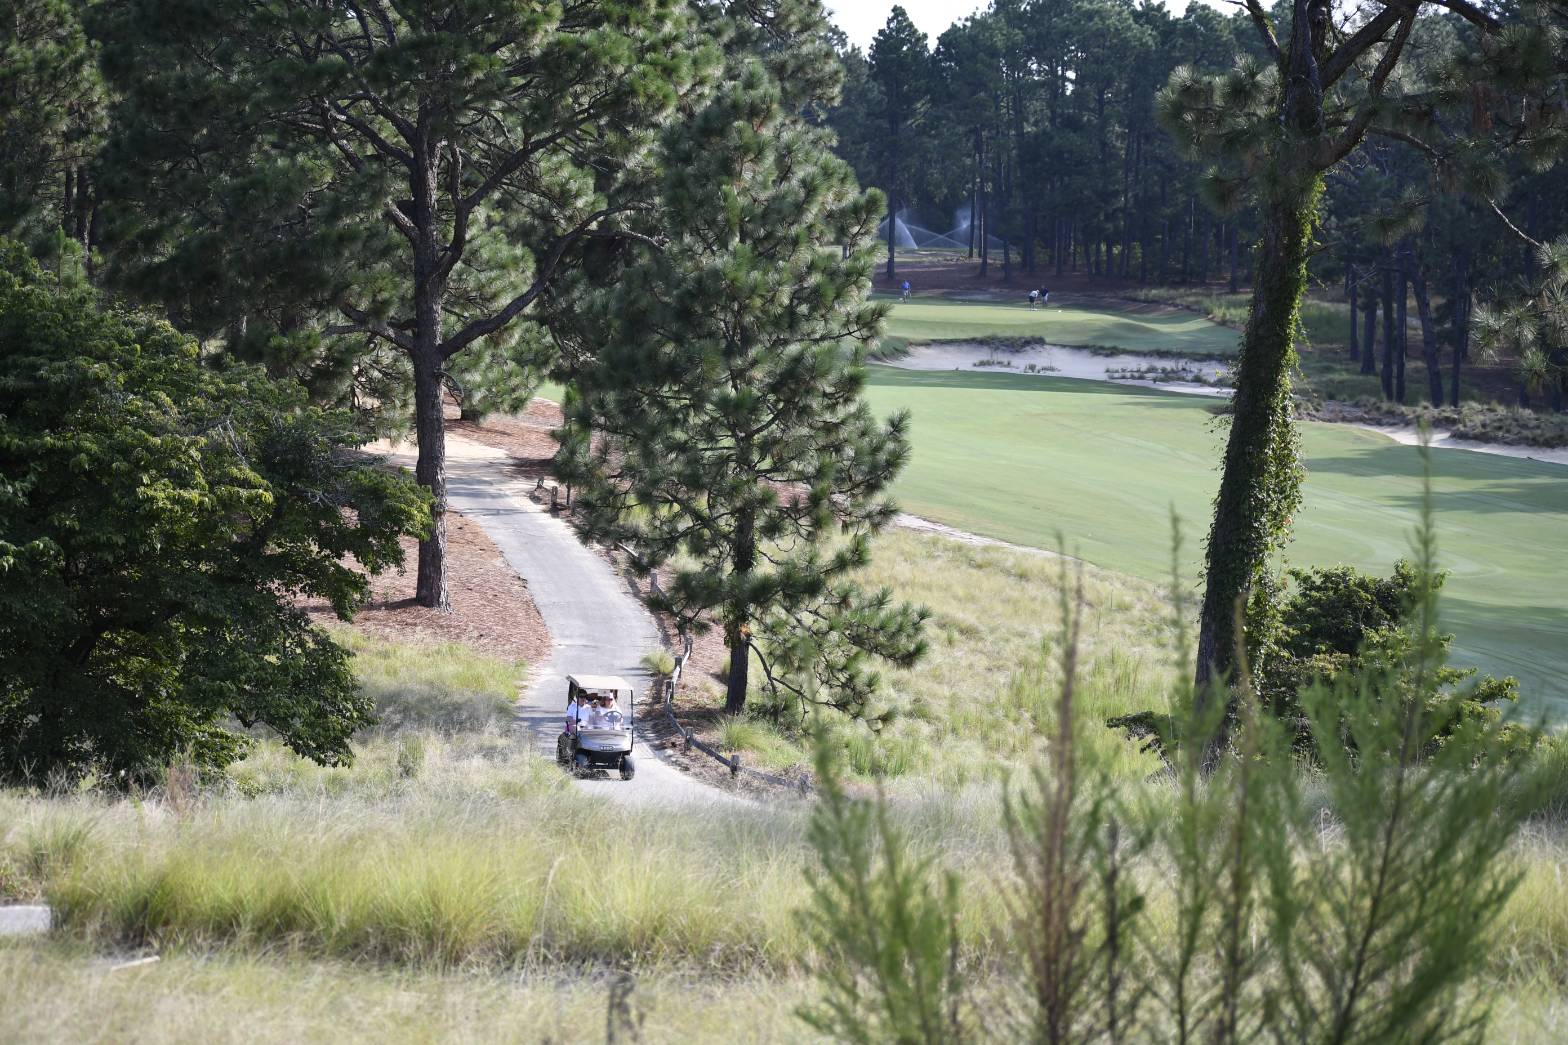 golf cart on golf course